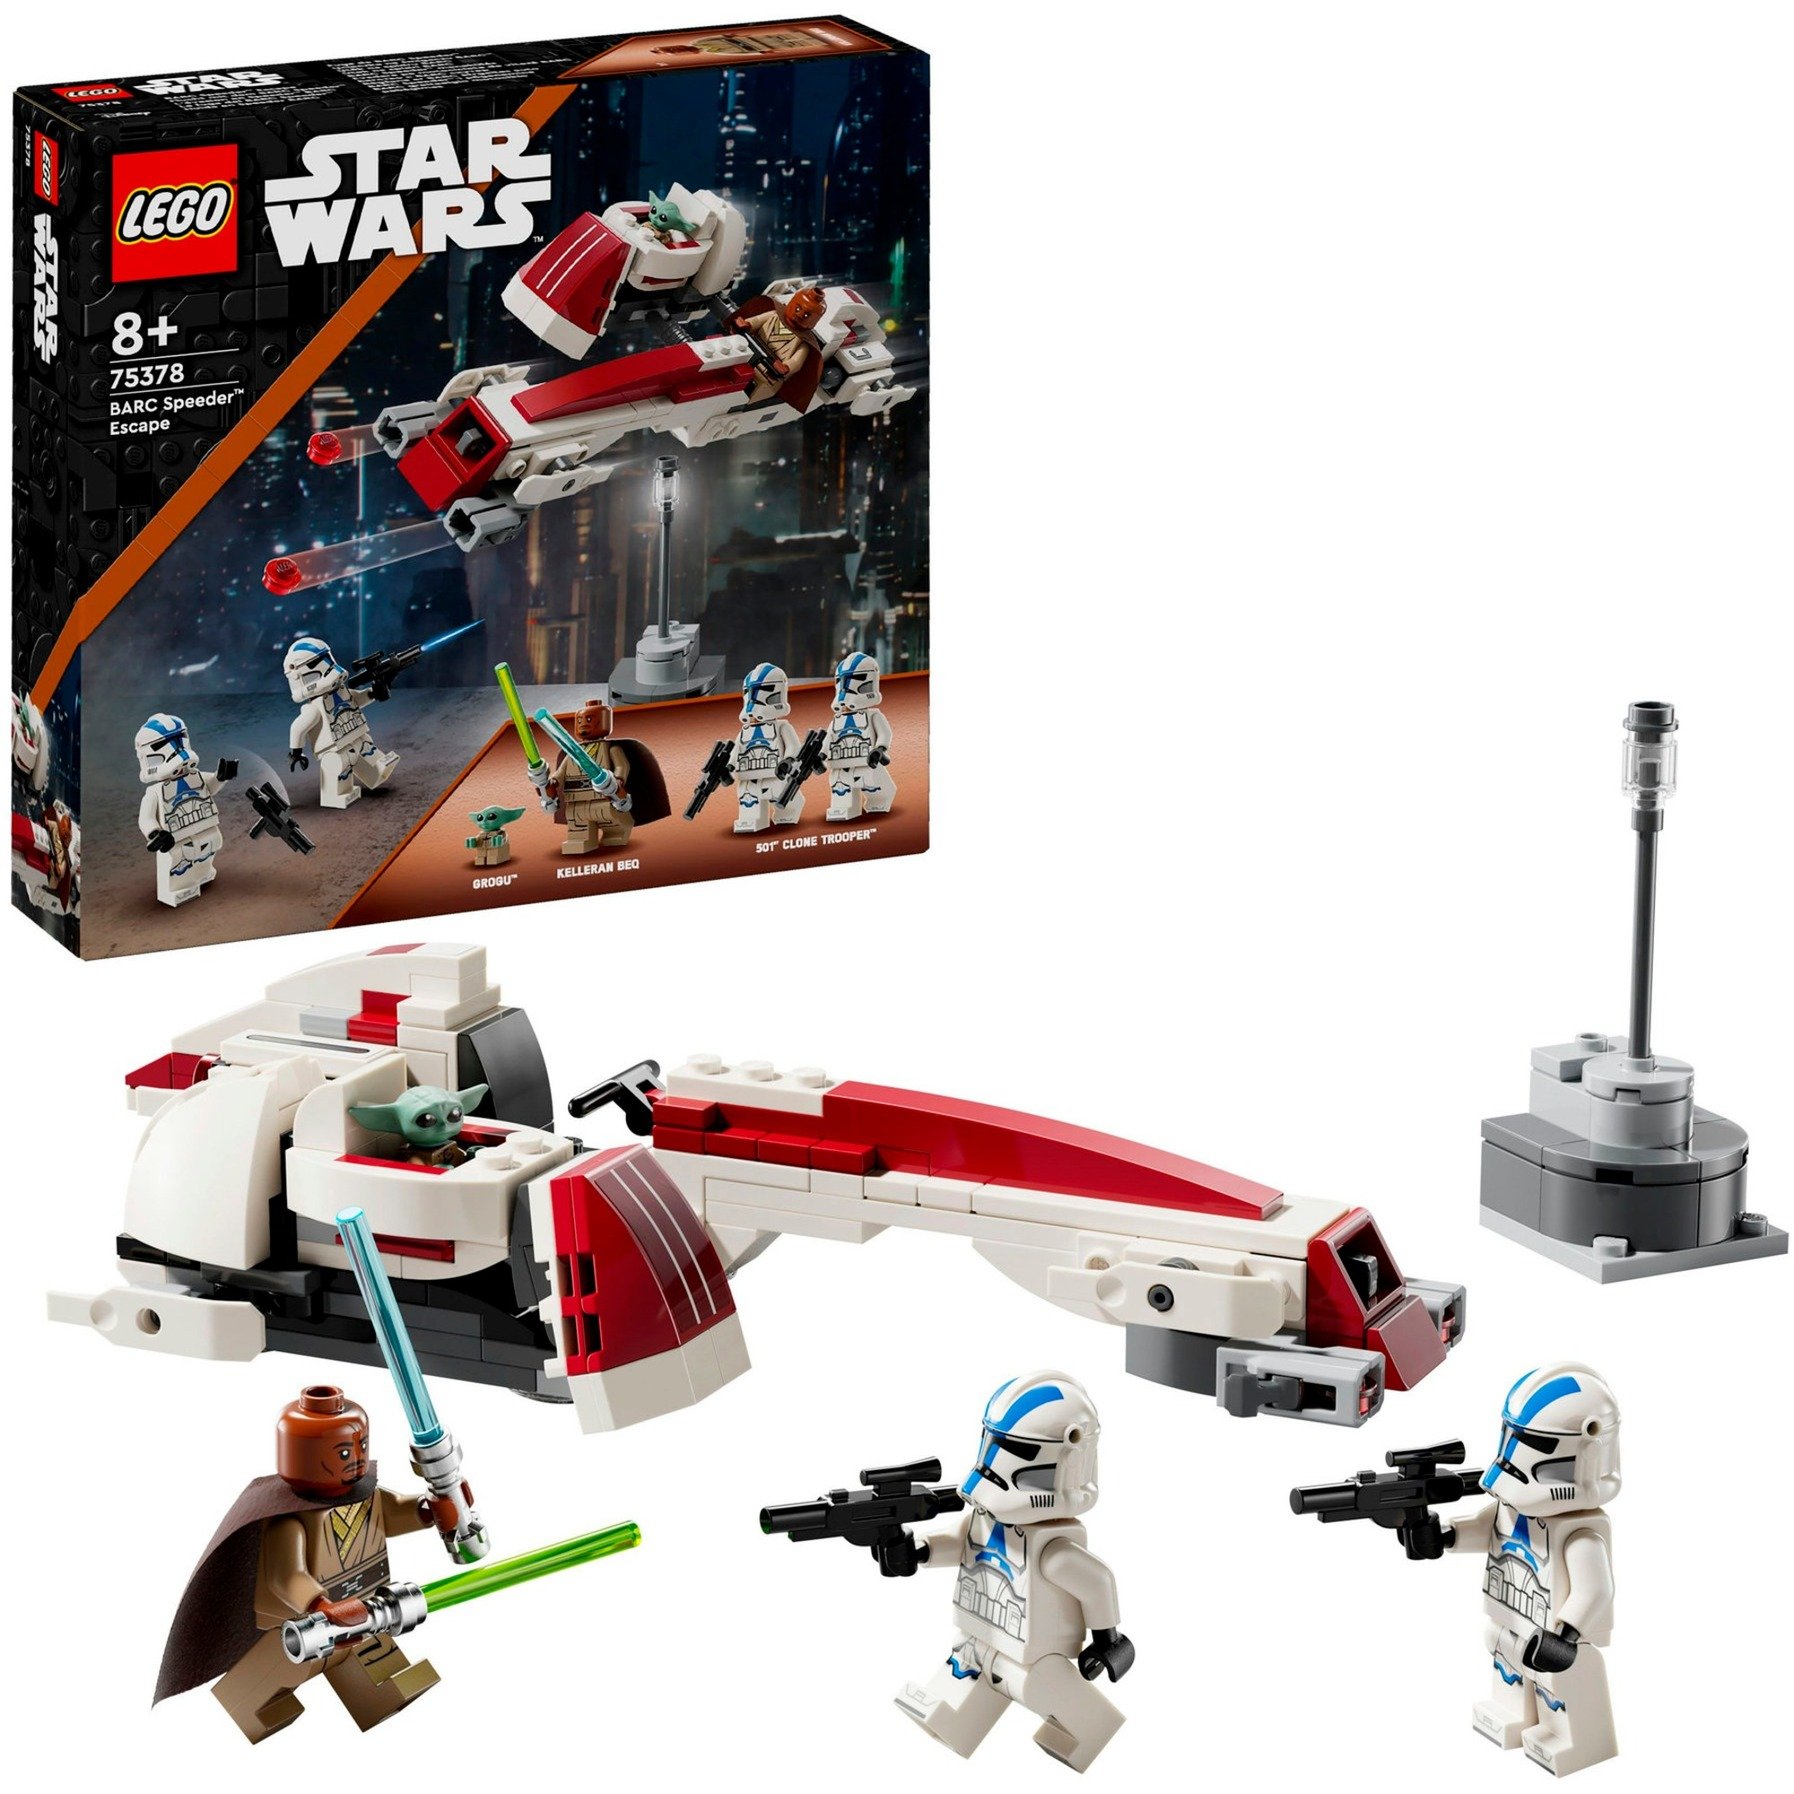 75378 Star Wars Flucht mit dem BARC Speeder, Konstruktionsspielzeug von Lego